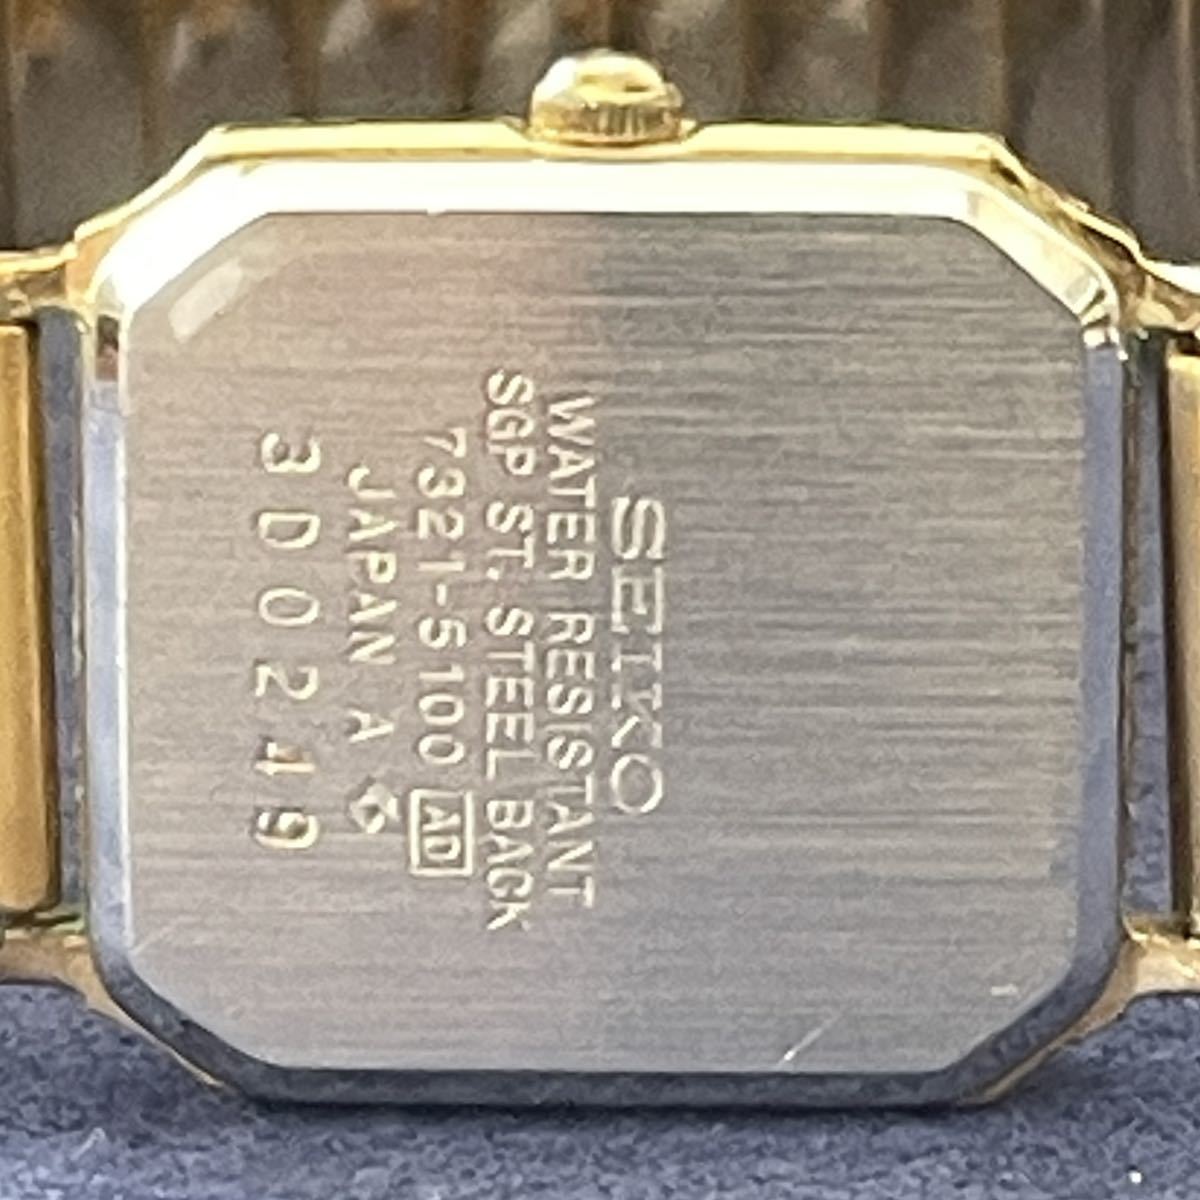 中古レディース腕時計 SEIKO セイコー 7321-5100 スクエア レディース QUARTZ クオーツ(2.12)_画像5